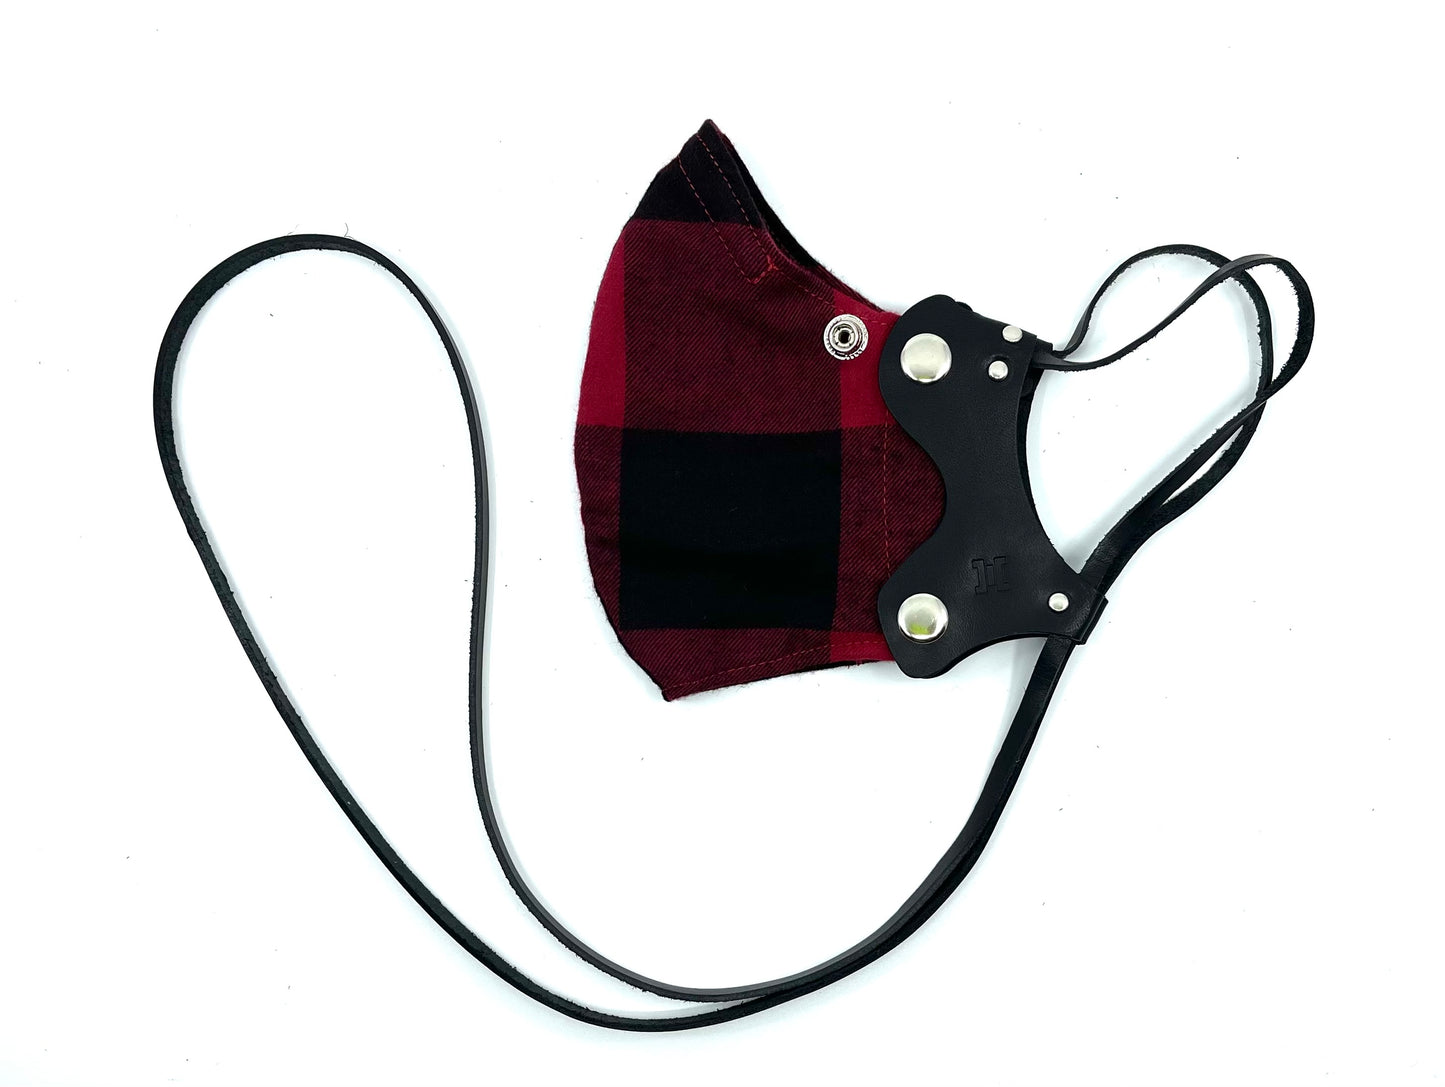 V2. Red Flannel Lanyard Mask